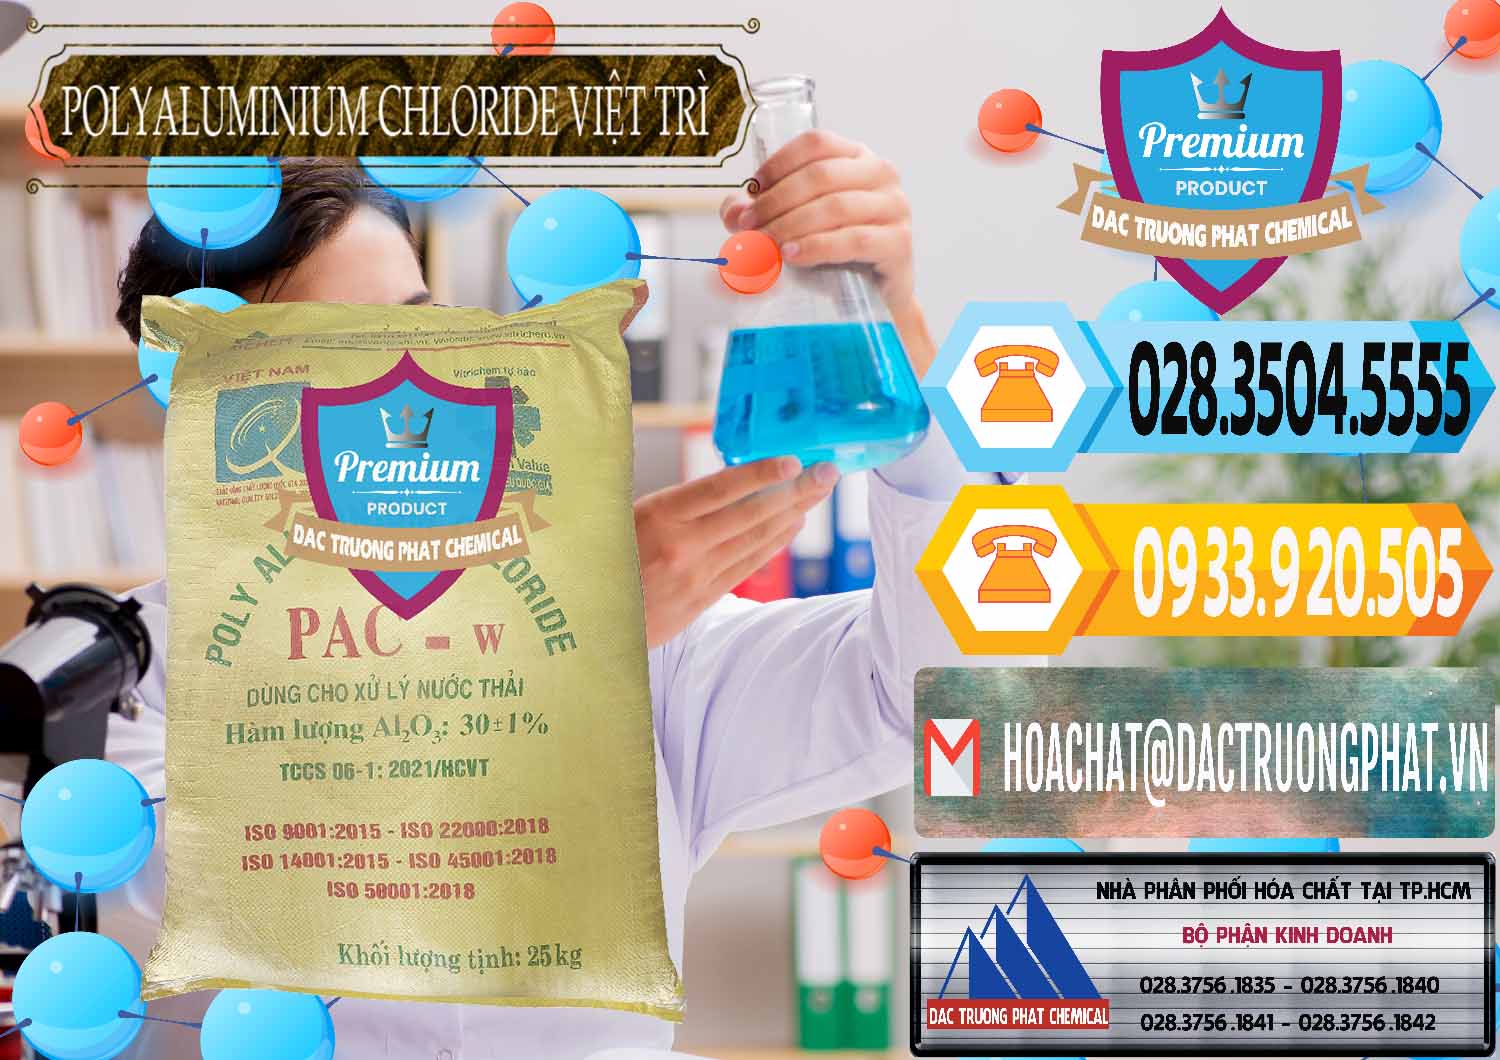 Cty bán & phân phối PAC - Polyaluminium Chloride Việt Trì Việt Nam - 0487 - Đơn vị phân phối & bán hóa chất tại TP.HCM - hoachattayrua.net